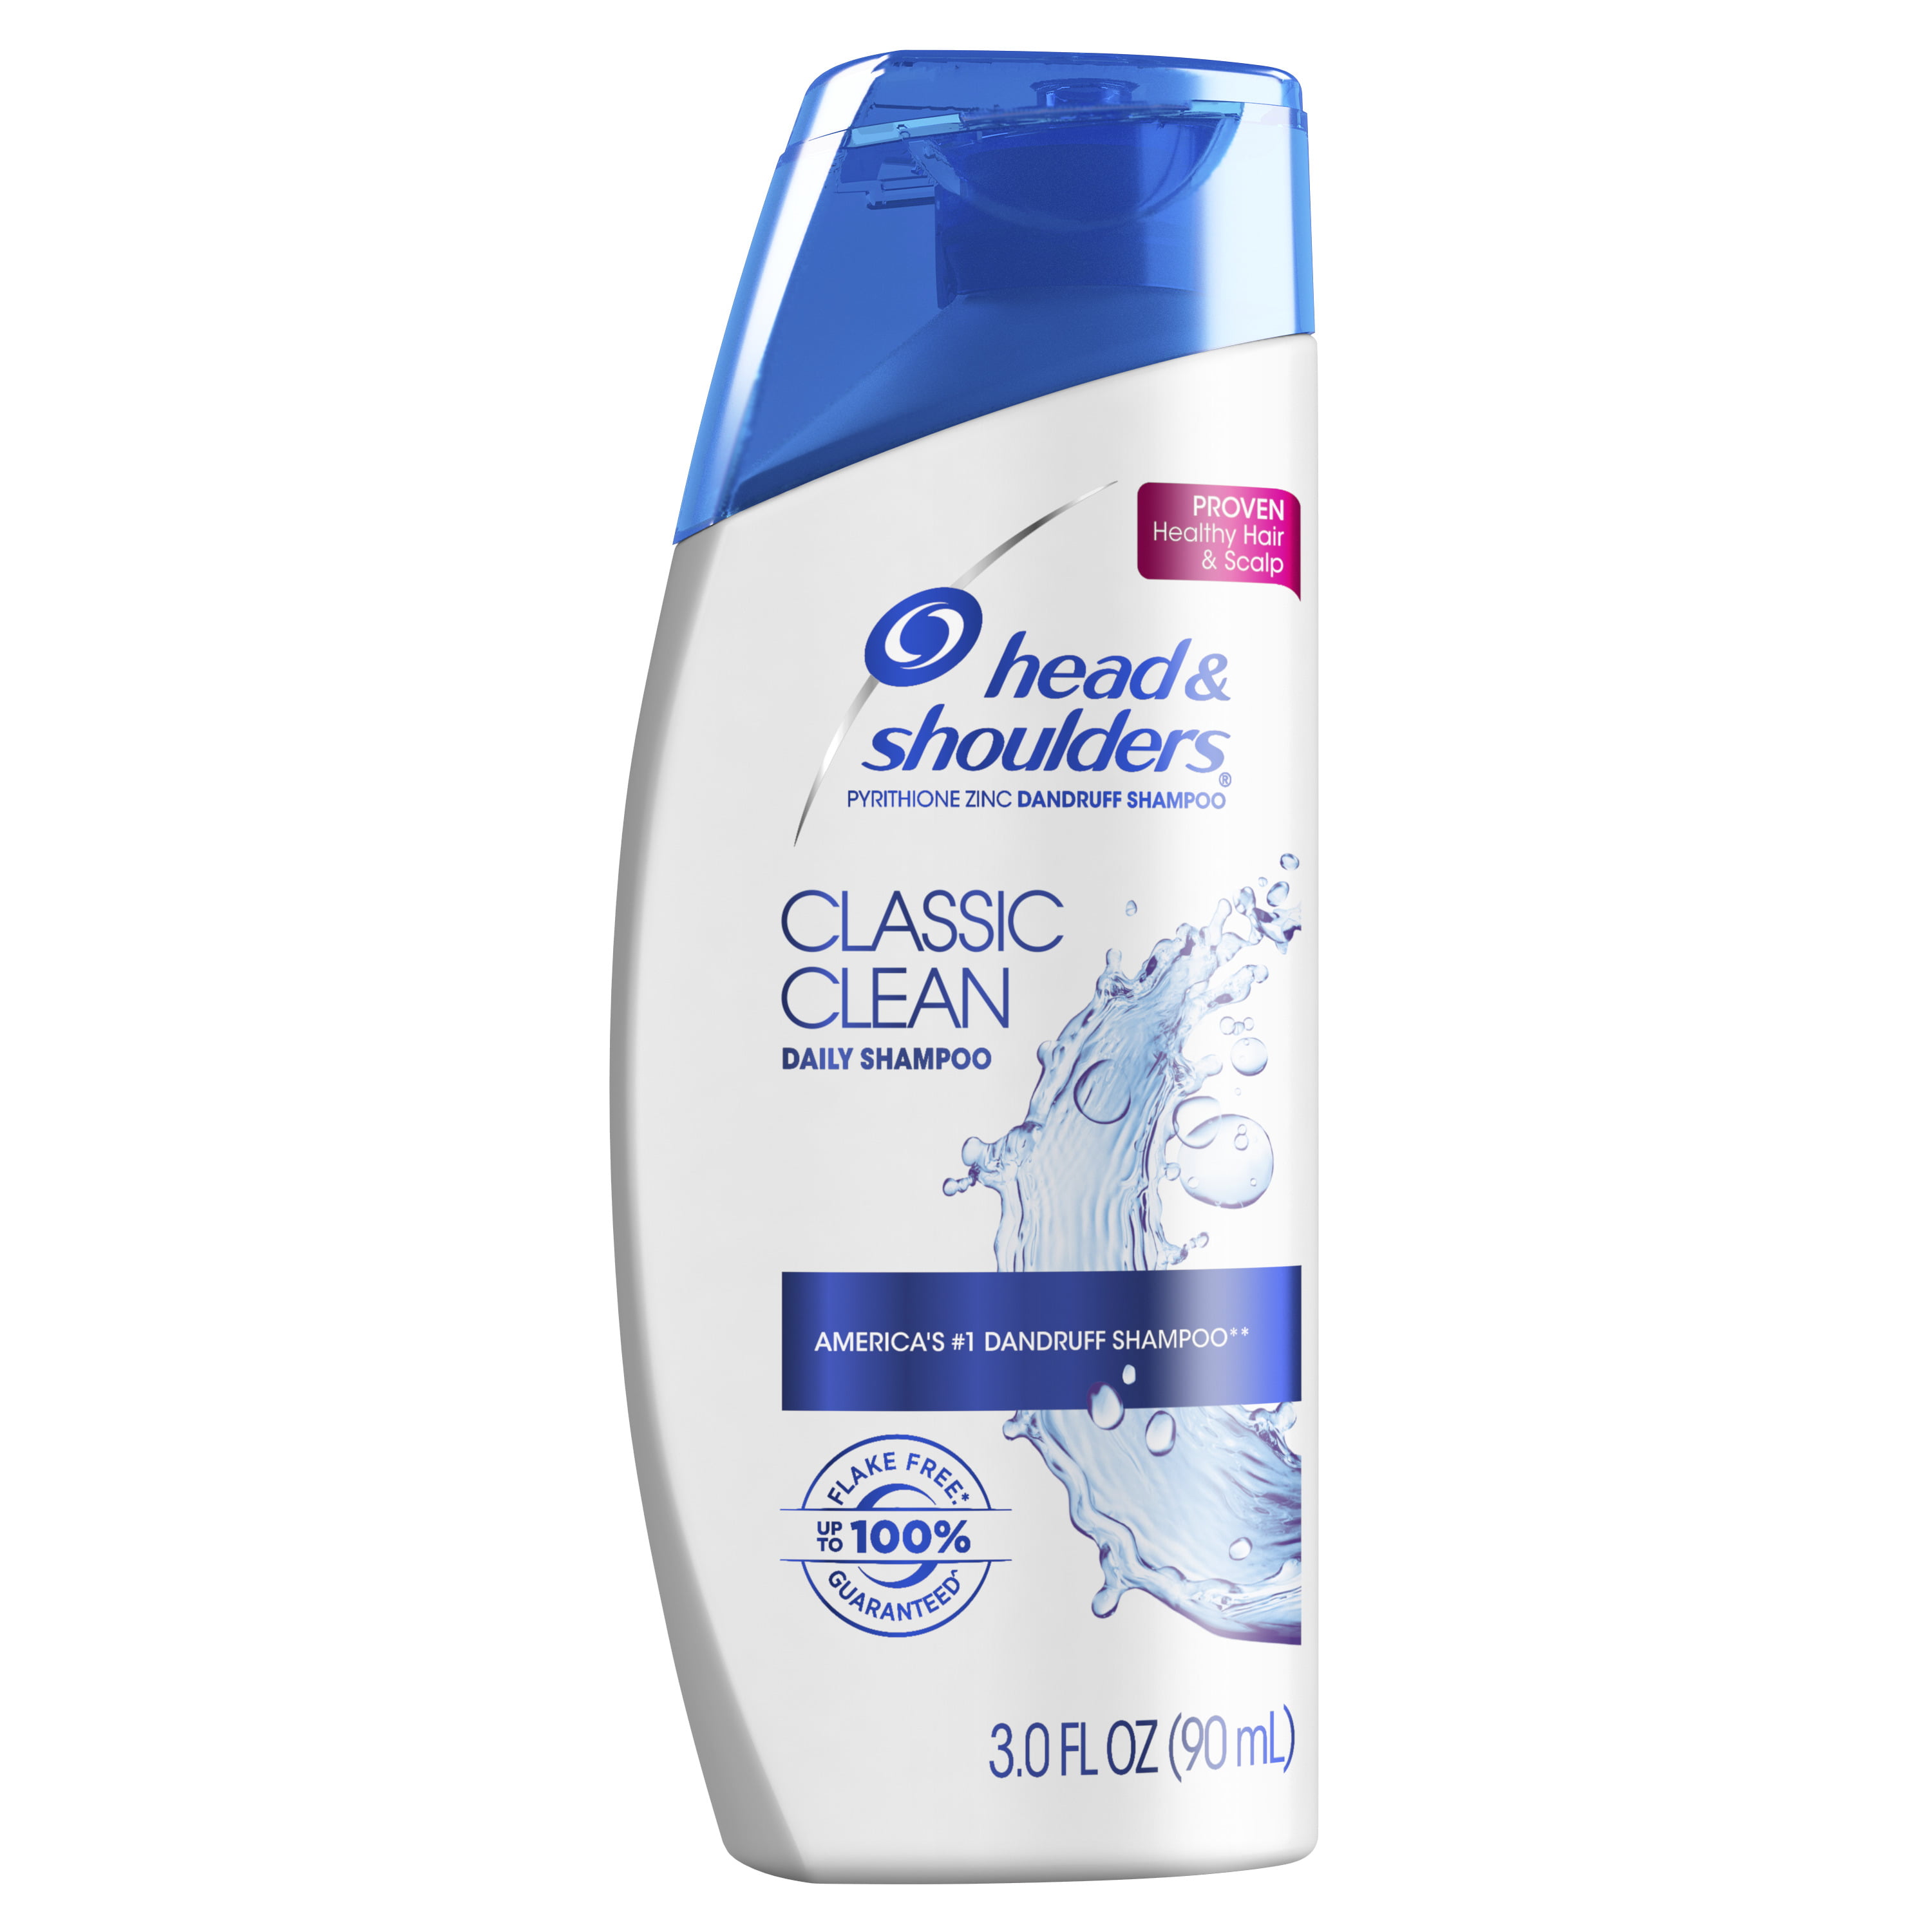 Shampoo Shoulder - Homecare24